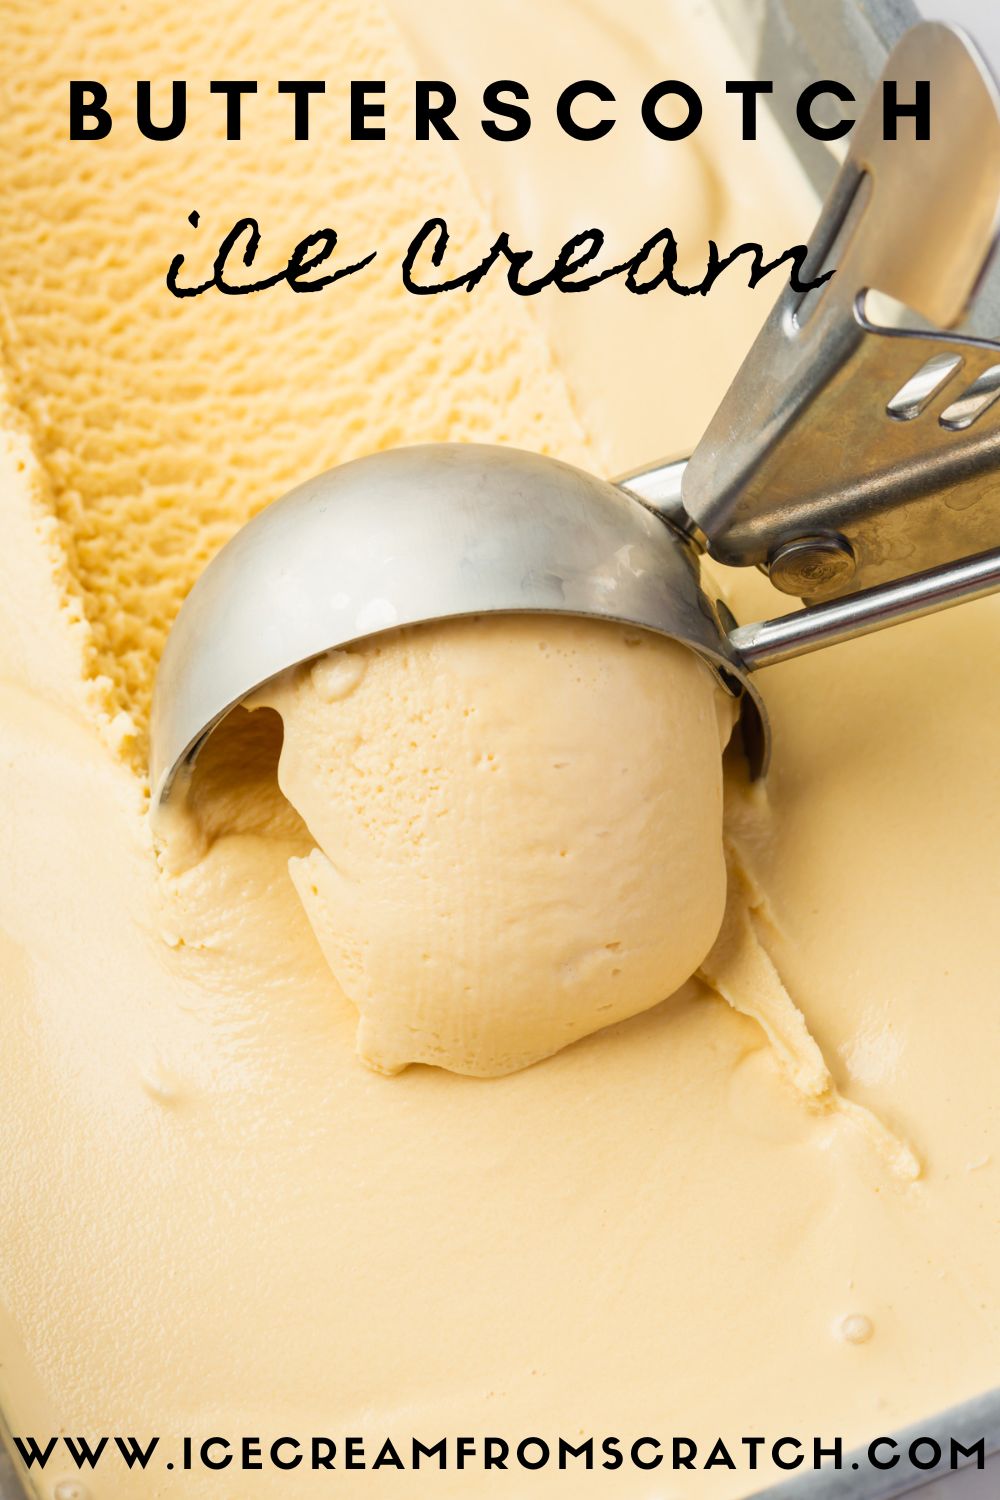 A pan of homemade butterscotch ice cream. Text at top of image says Butterscotch ice cream.